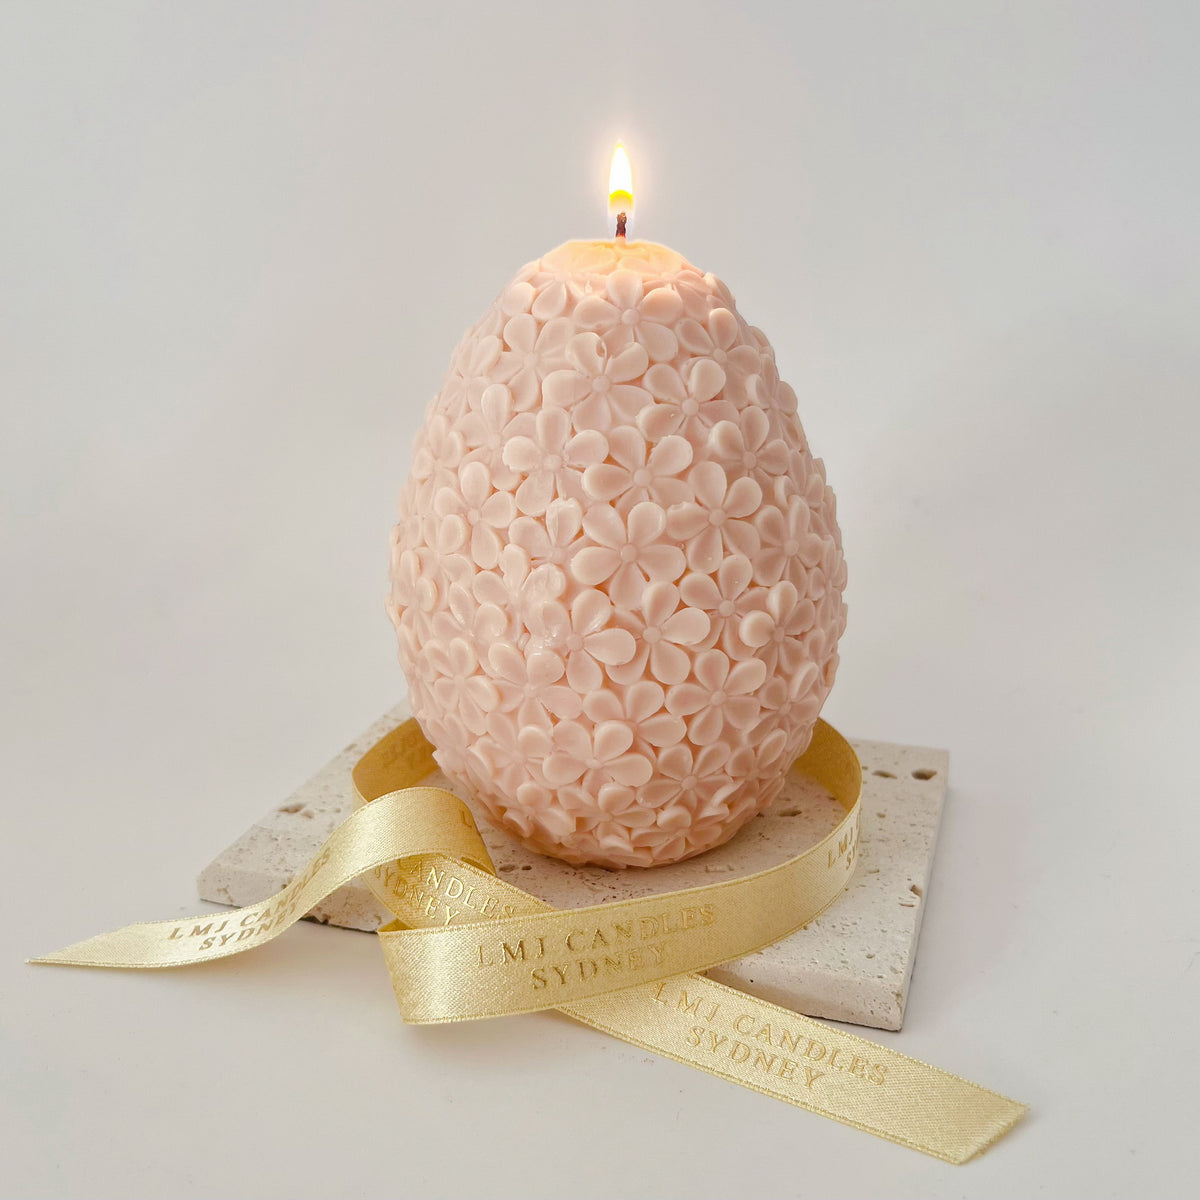 Handmade flower easter egg by LMJ Candles